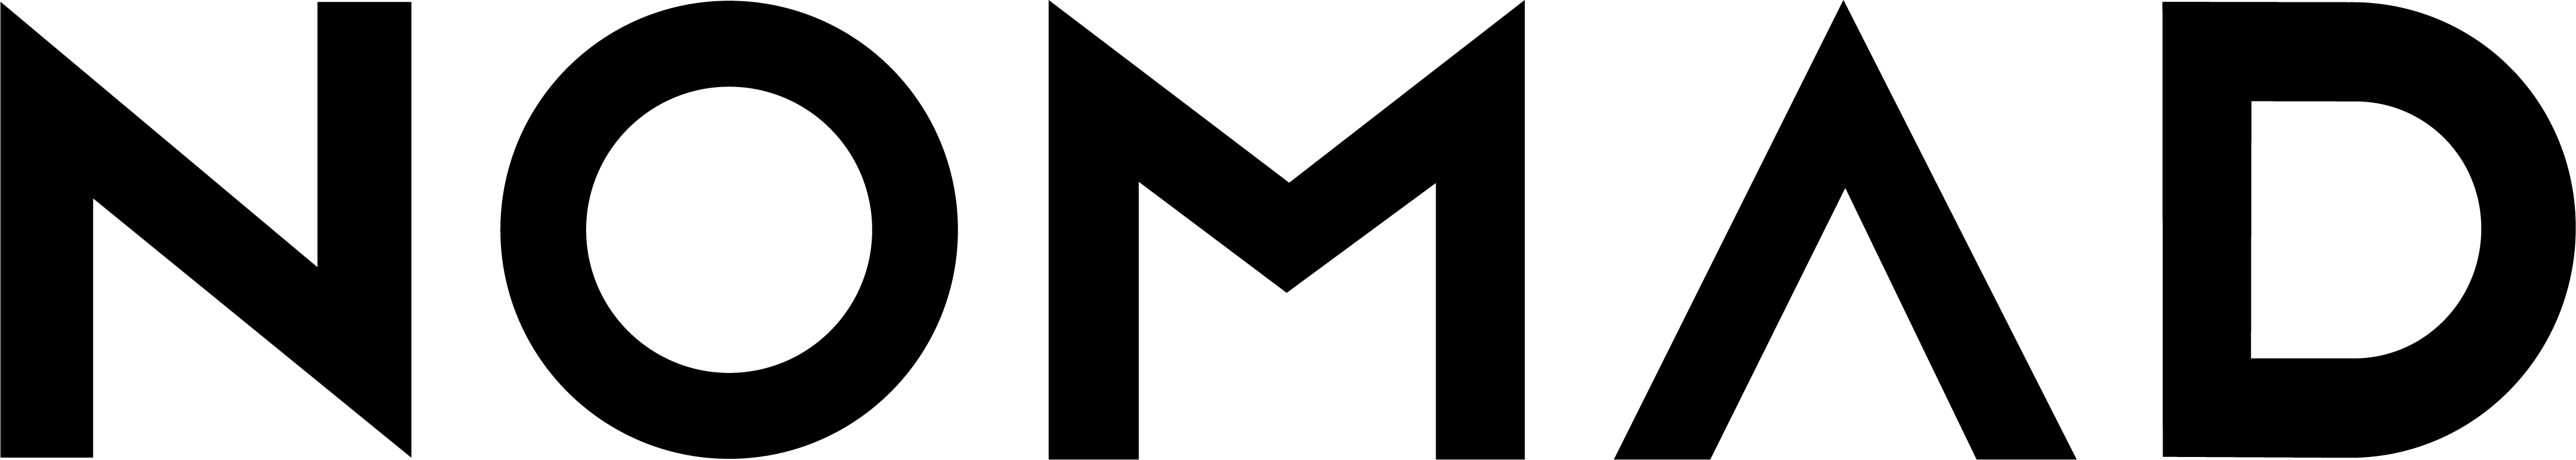 Nomad - Modern Leather Folio - logo